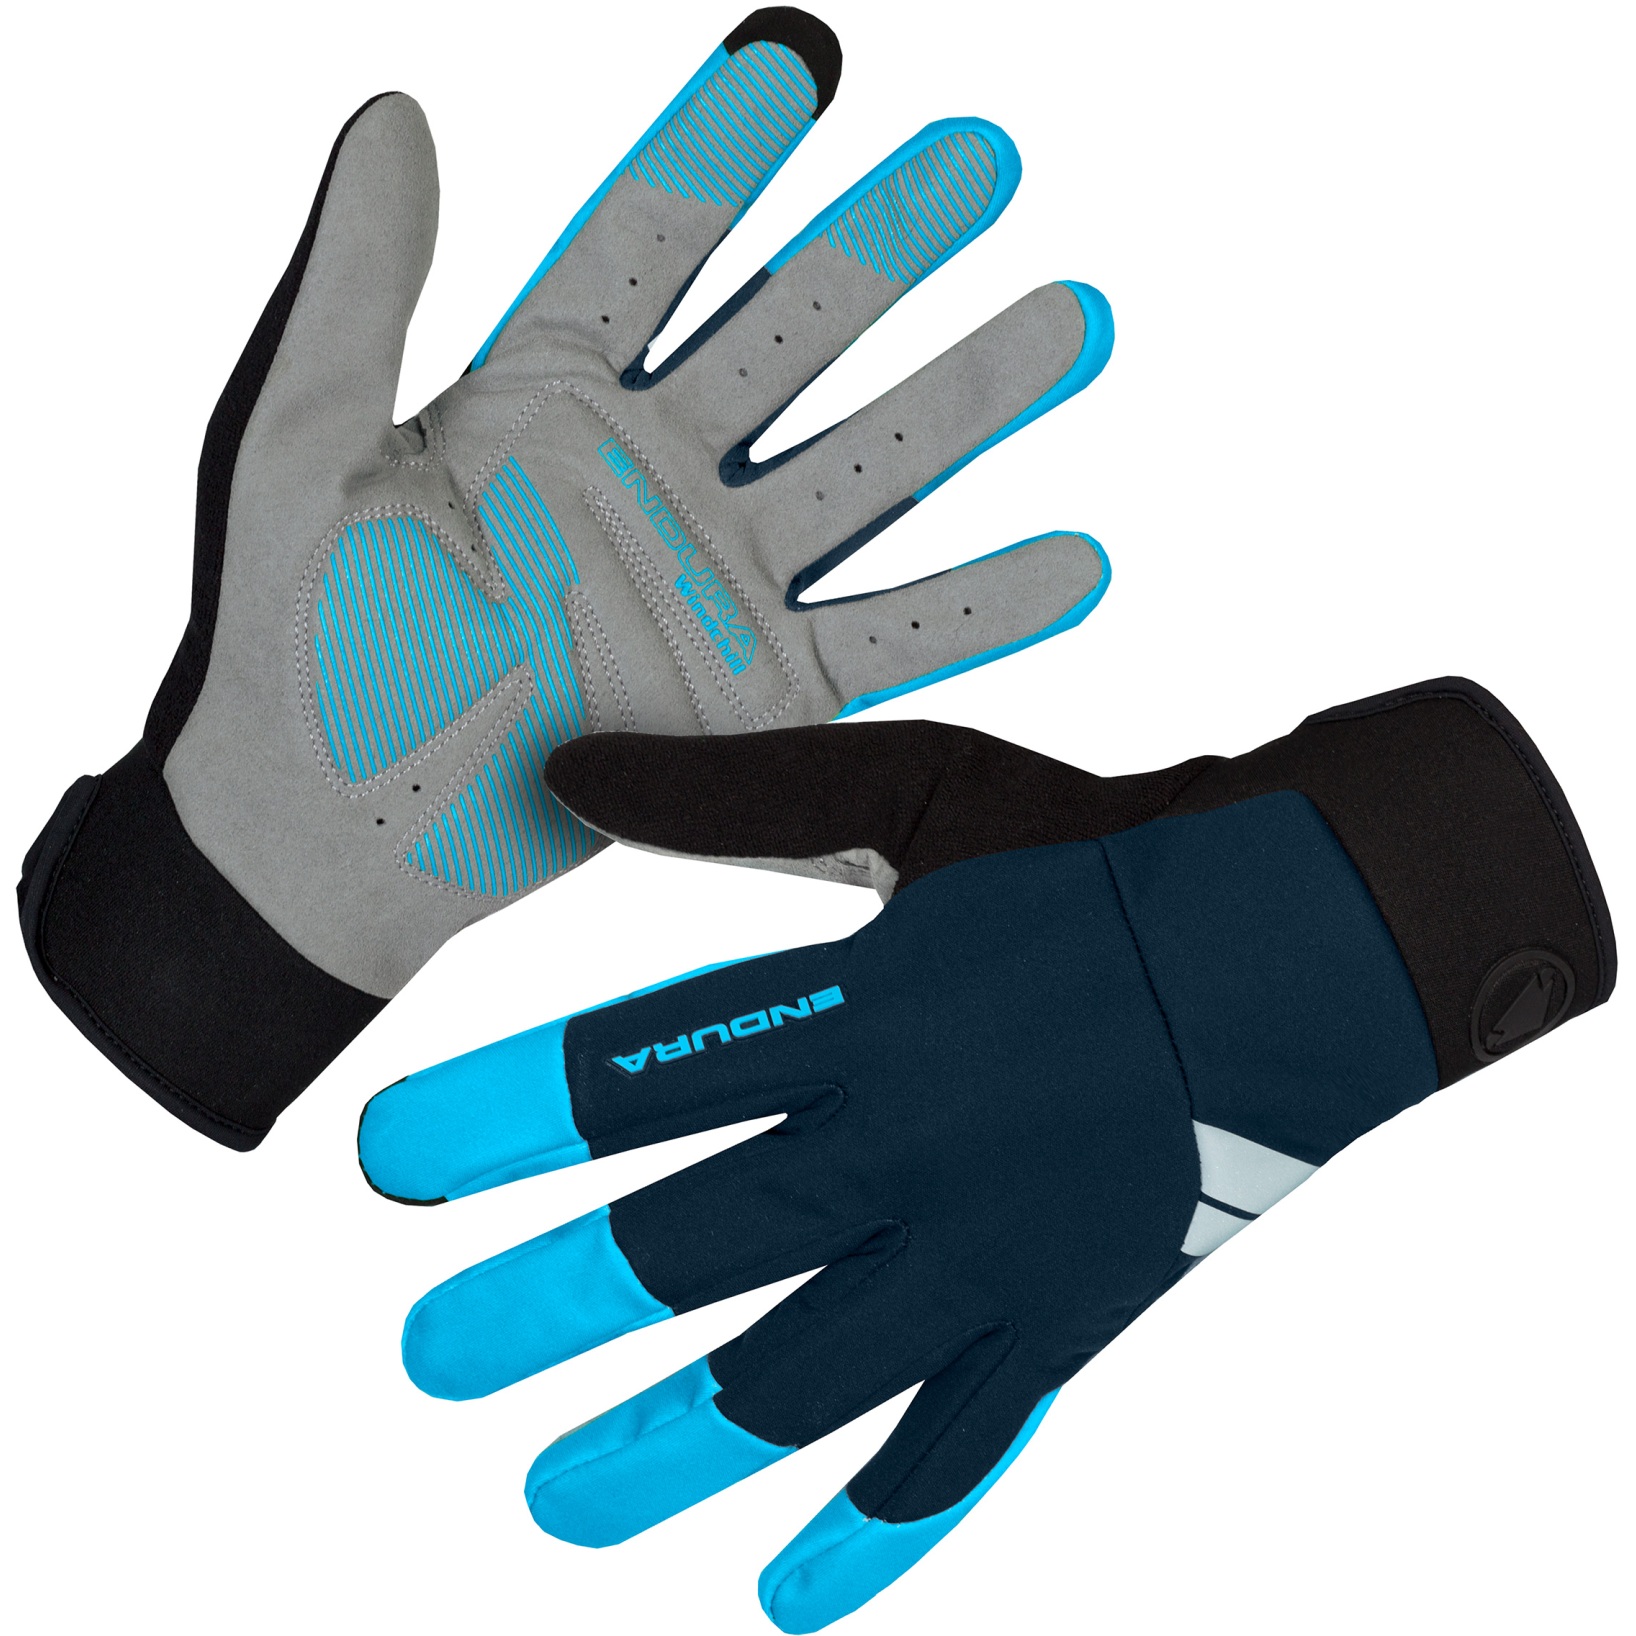 Produktbild von Endura Windchill Handschuh - neon-blau